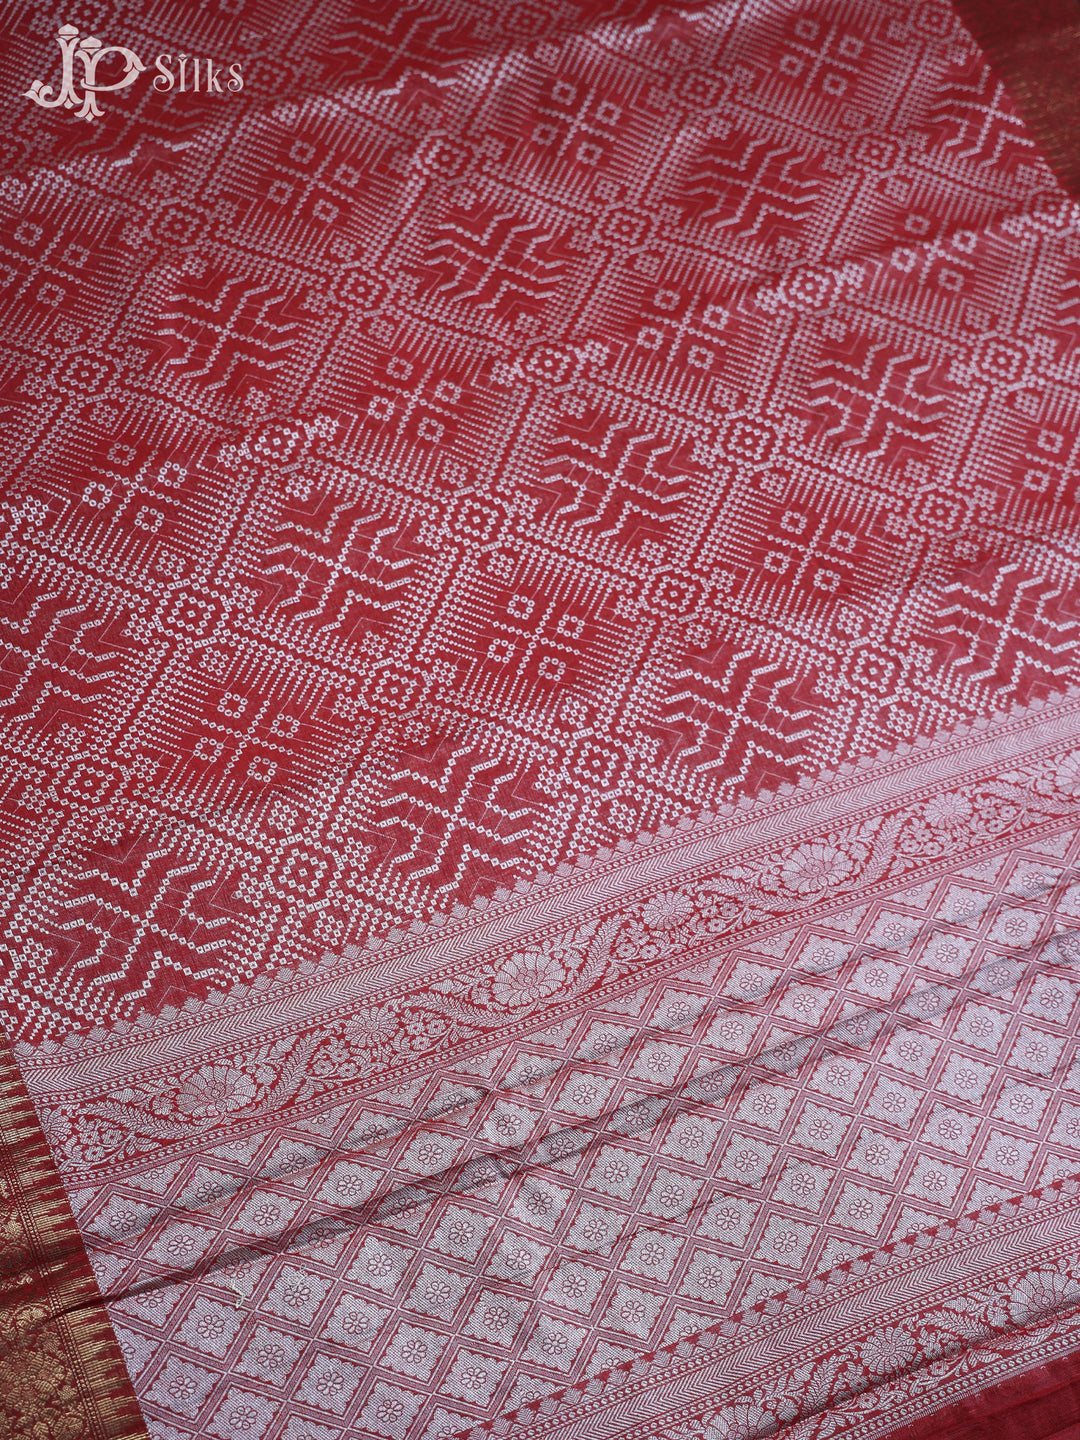 Red Kota Fancy Saree - E804 - View 2